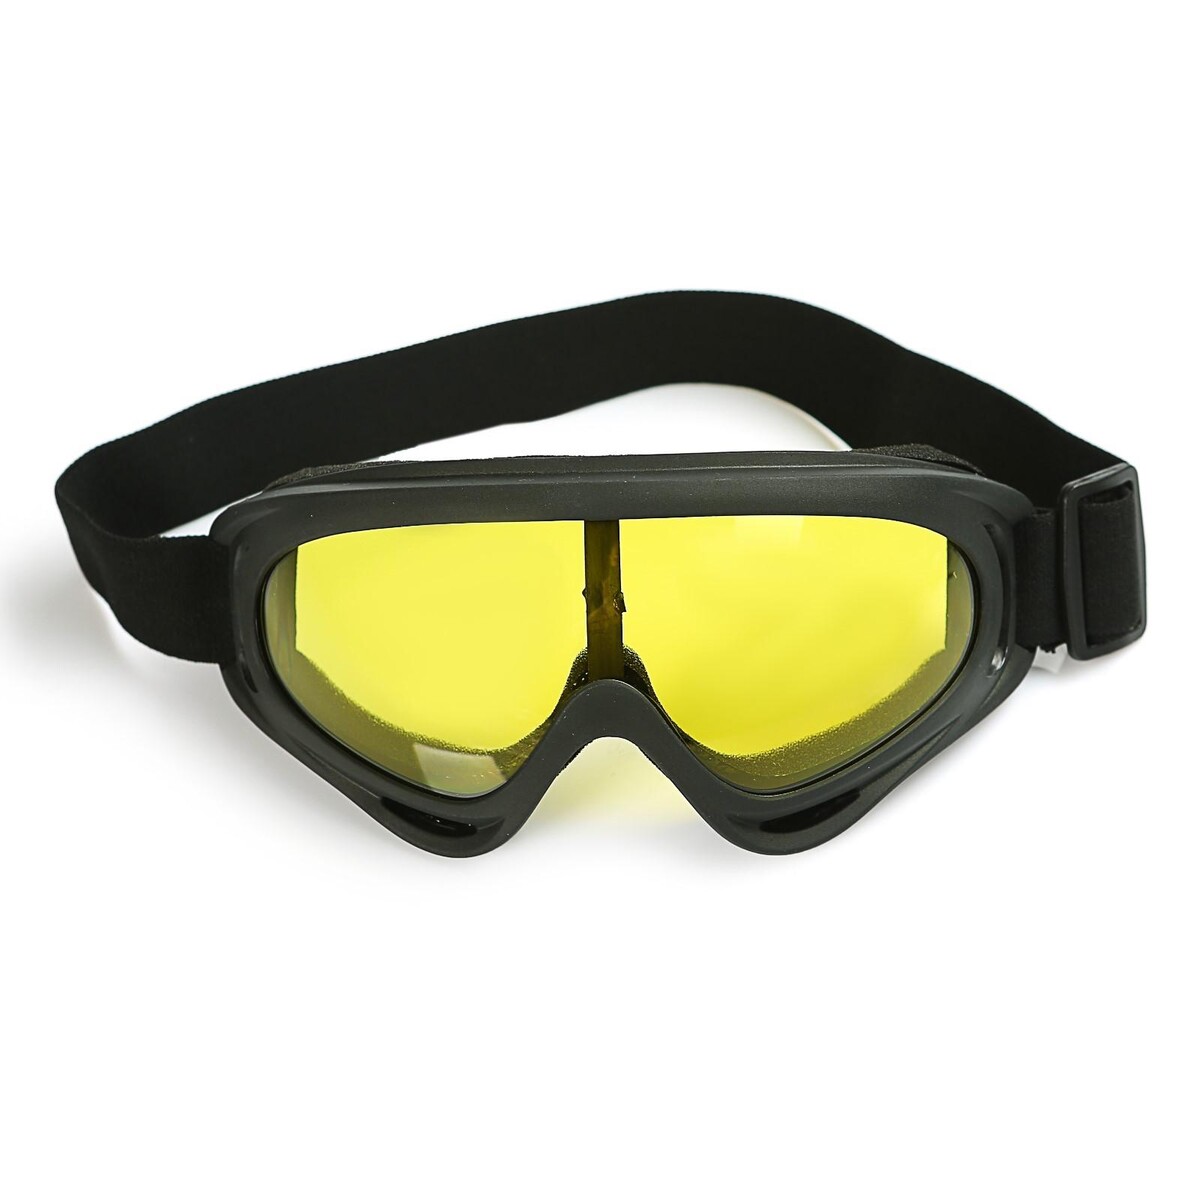 Очки для езды на мототехнике, стекло желтое, цвет черный очки для езды на мототехнике стекло желтое